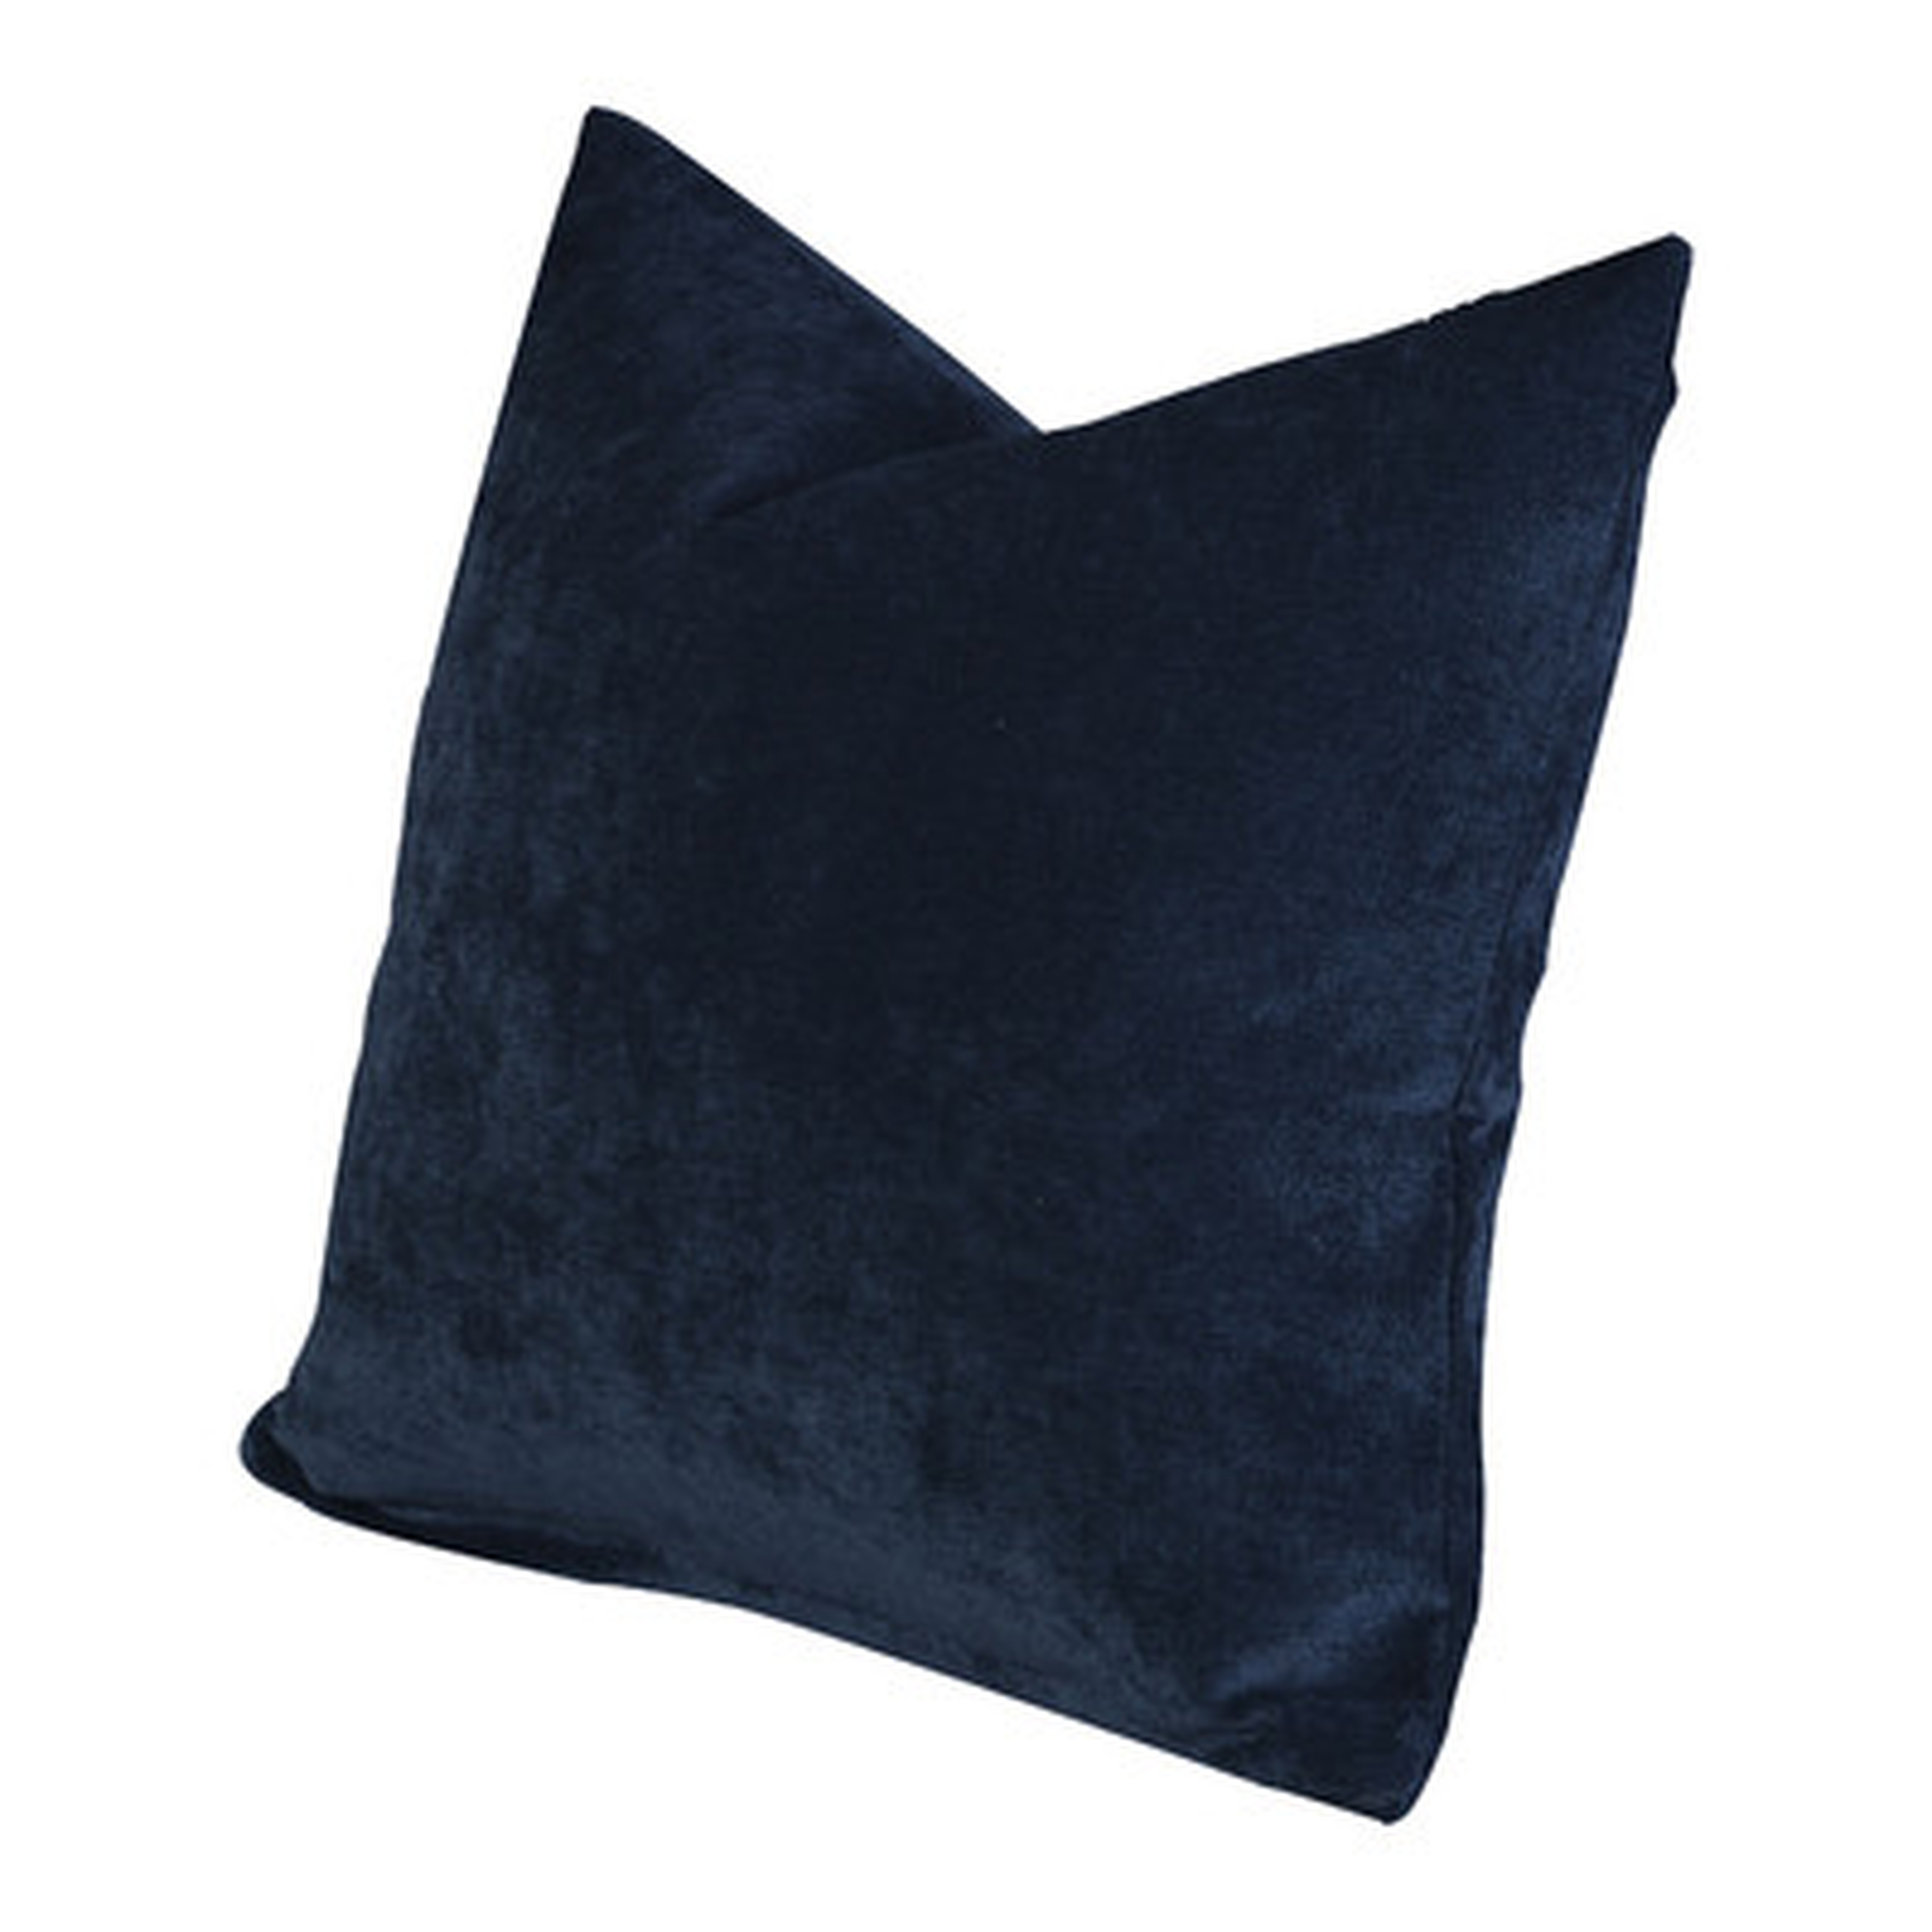 Padma Throw Pillow - Blue Bell - 20" x 20" - With insert - Wayfair